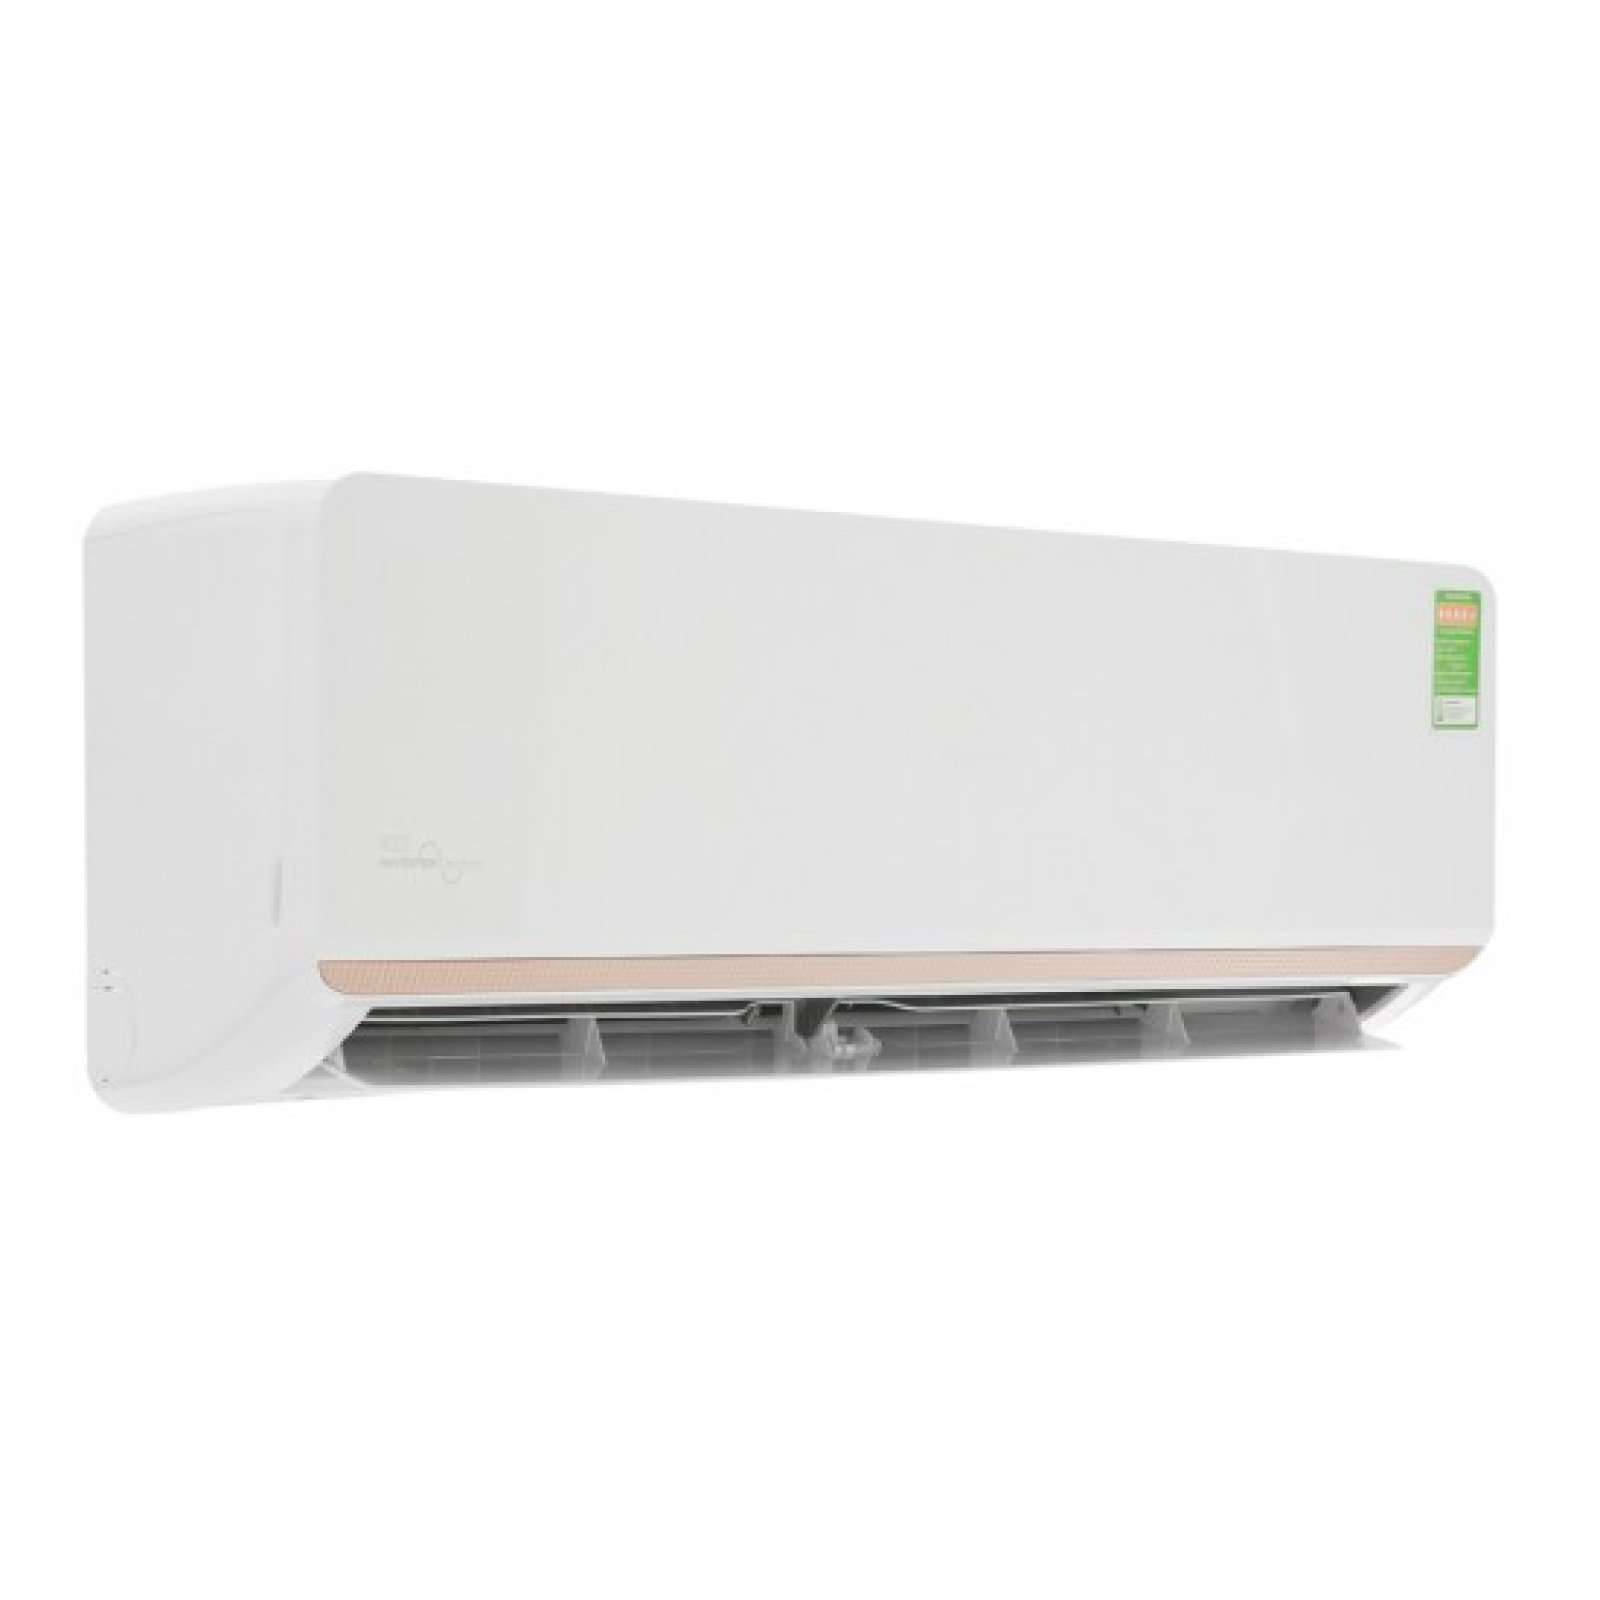 Máy lạnh Electrolux Inverter 1 HP ESV09CRR-C6, giá rẻ, chính hãng